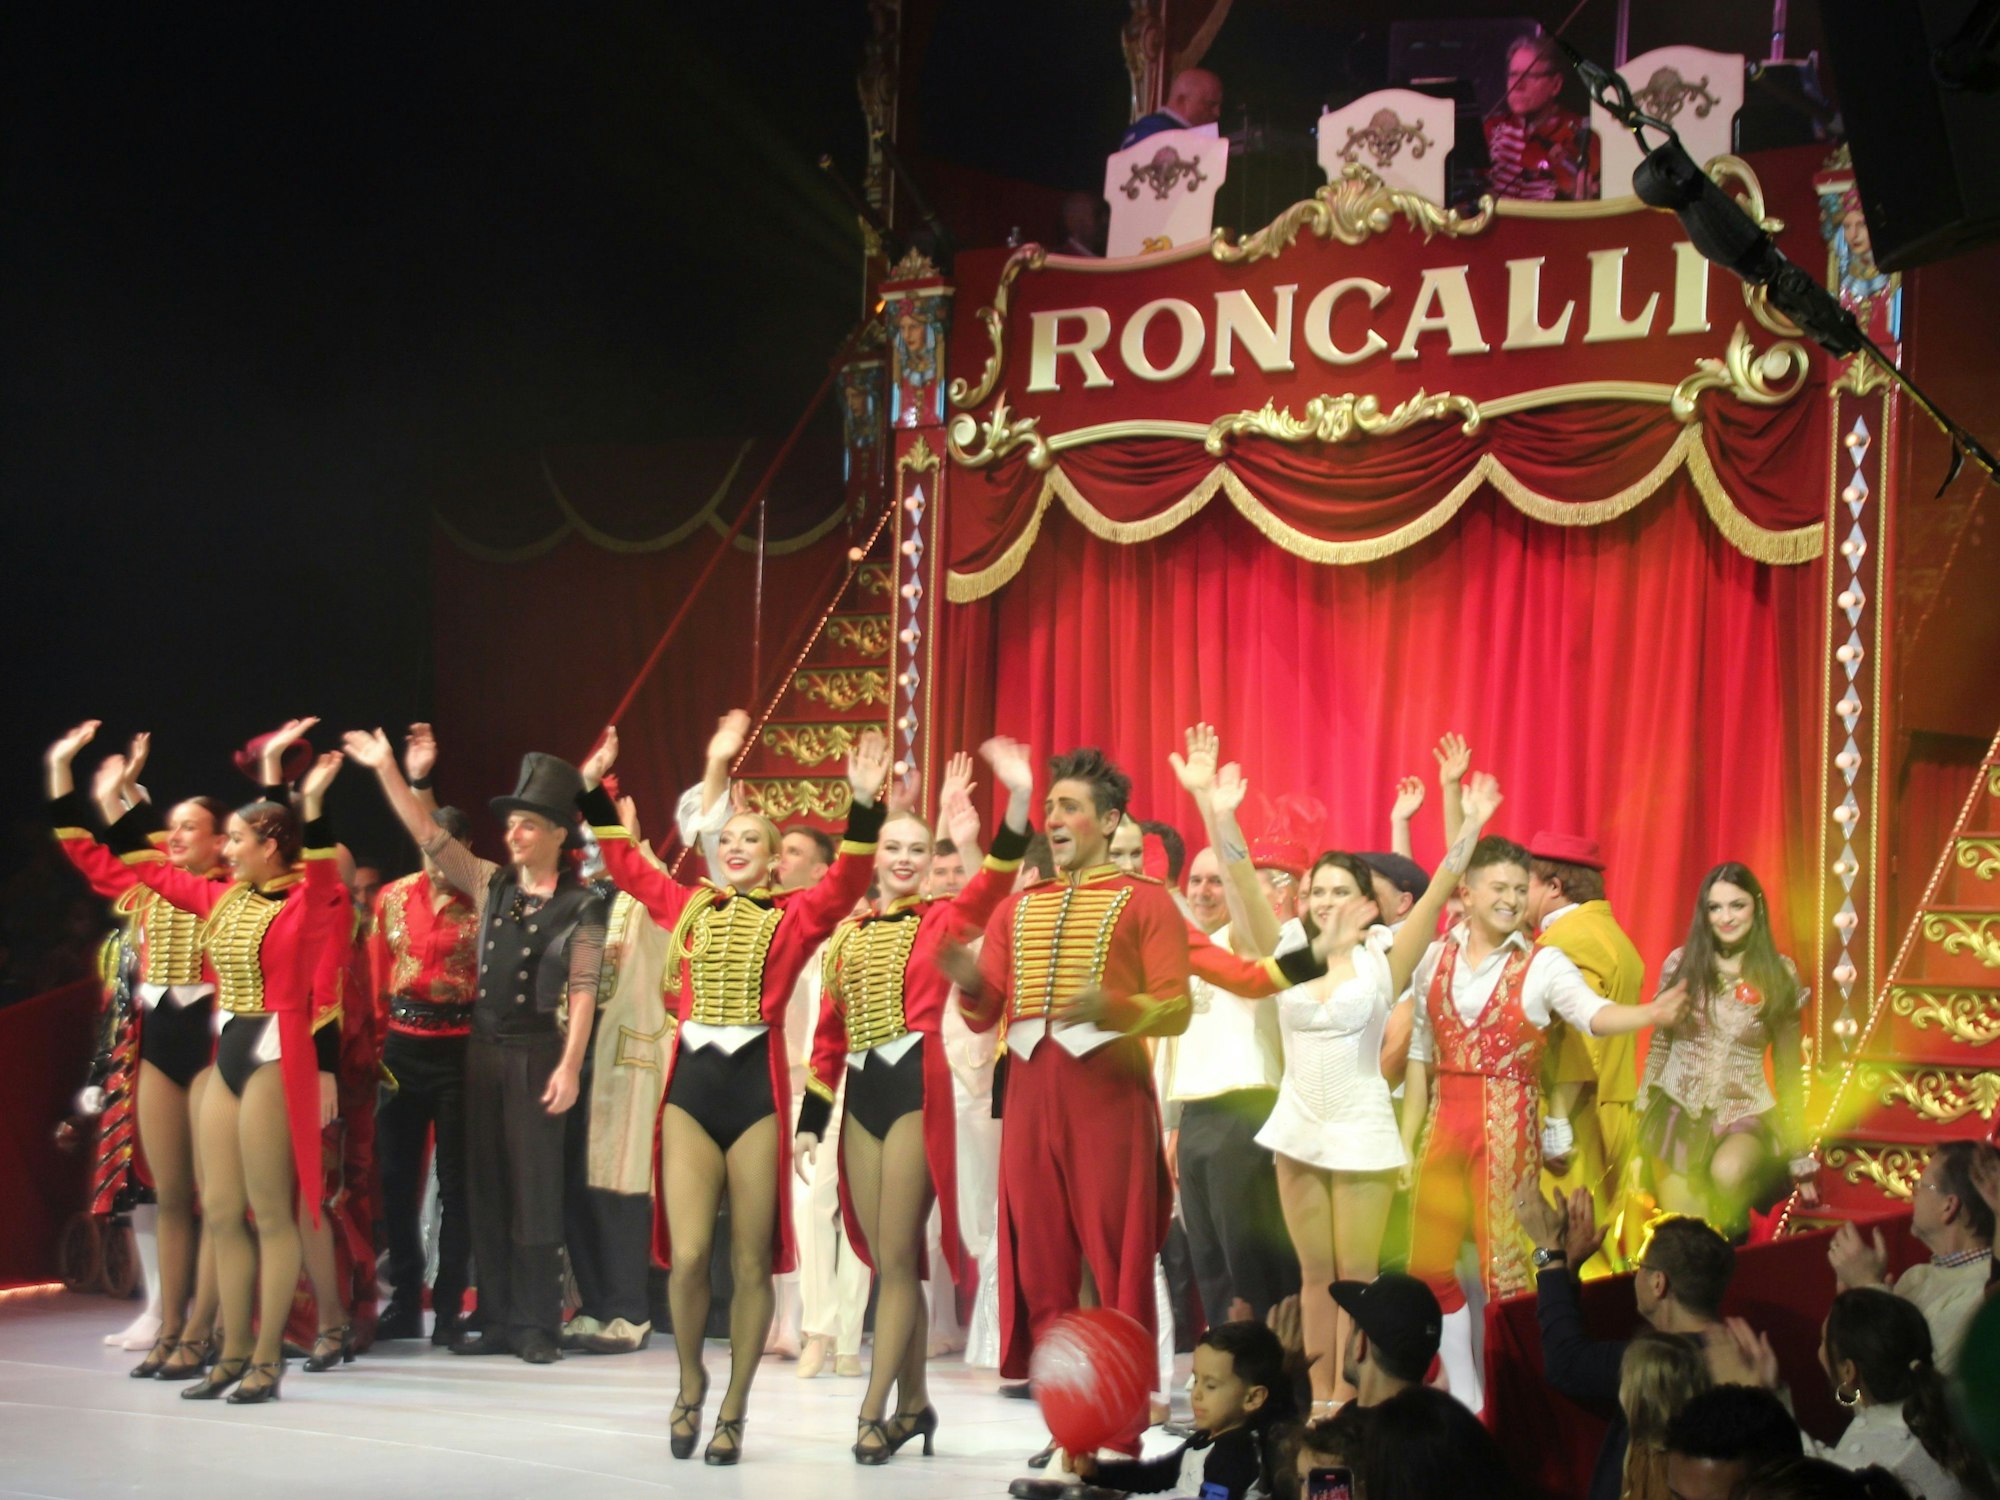 Eine Aufführung des Circus Roncalli in New York.